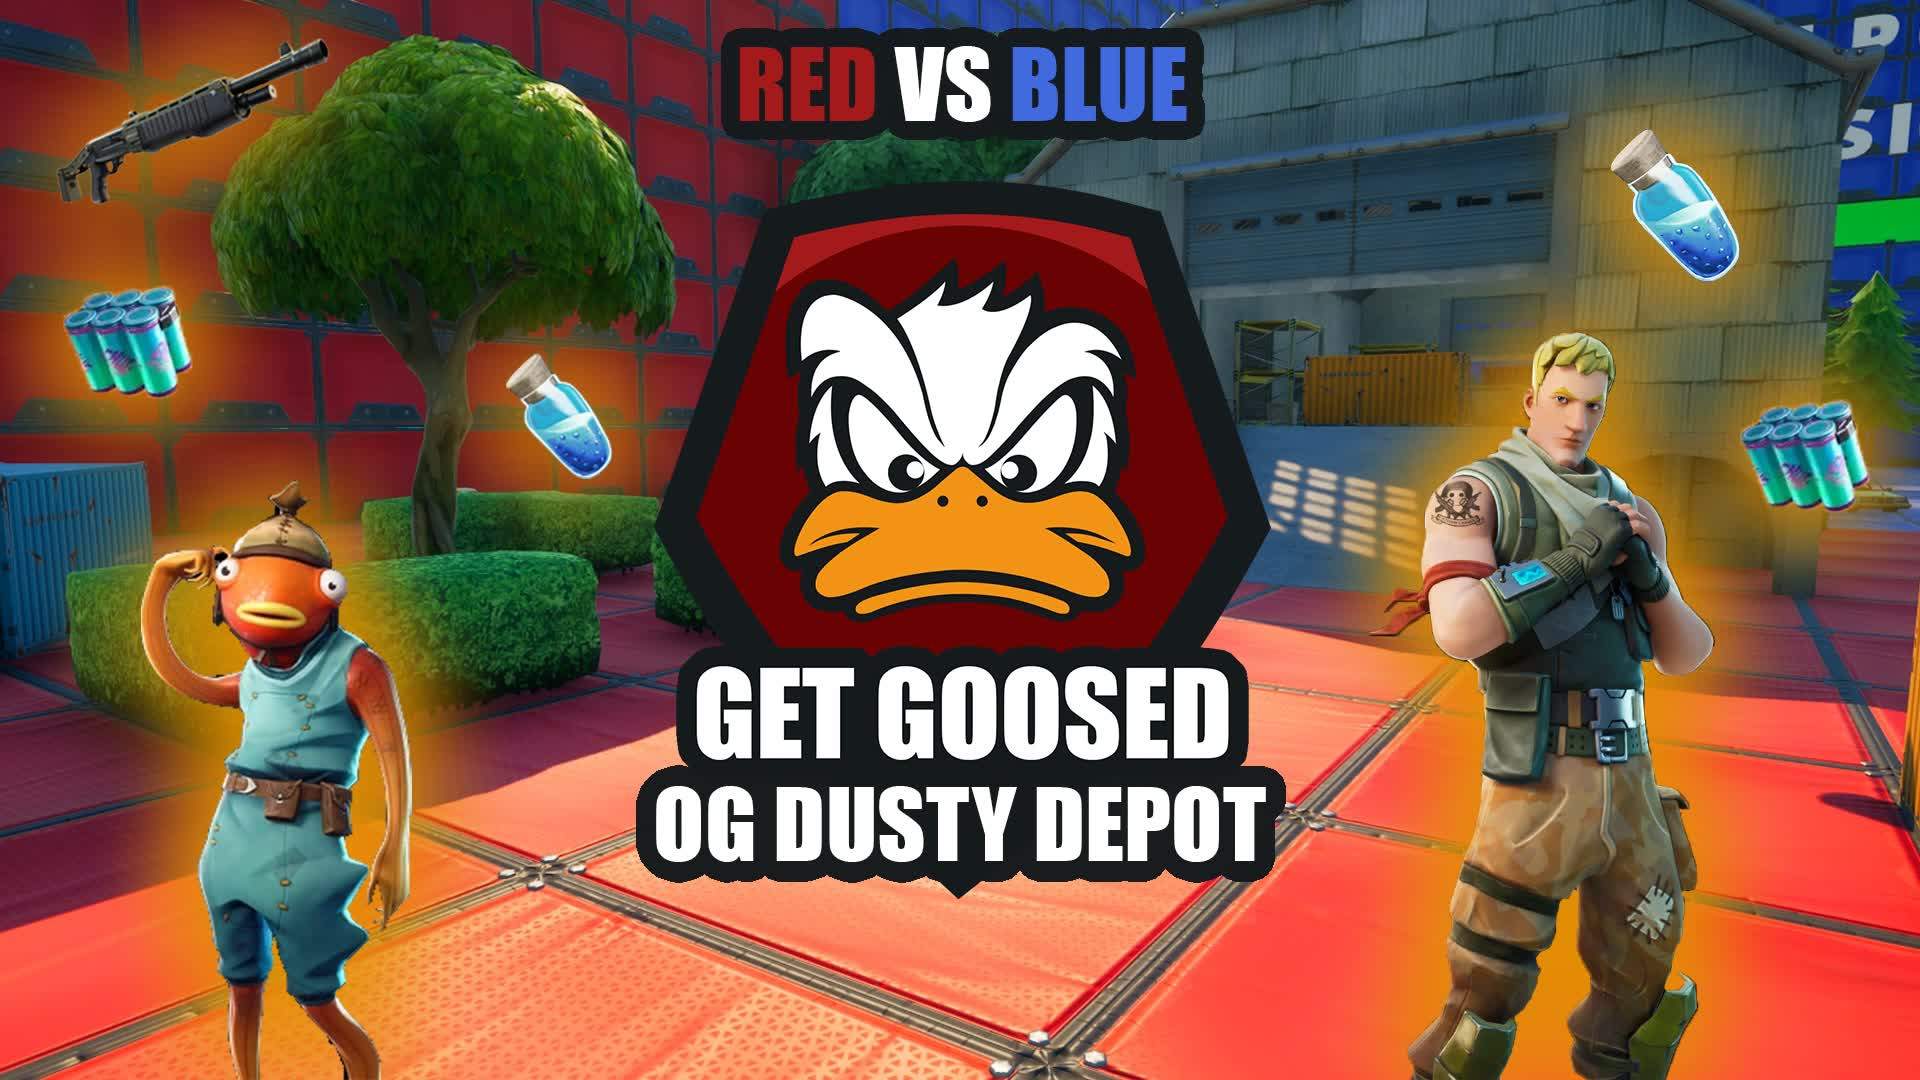 RED VS BLUE DUSTY DEPOT OG GET GOOSED